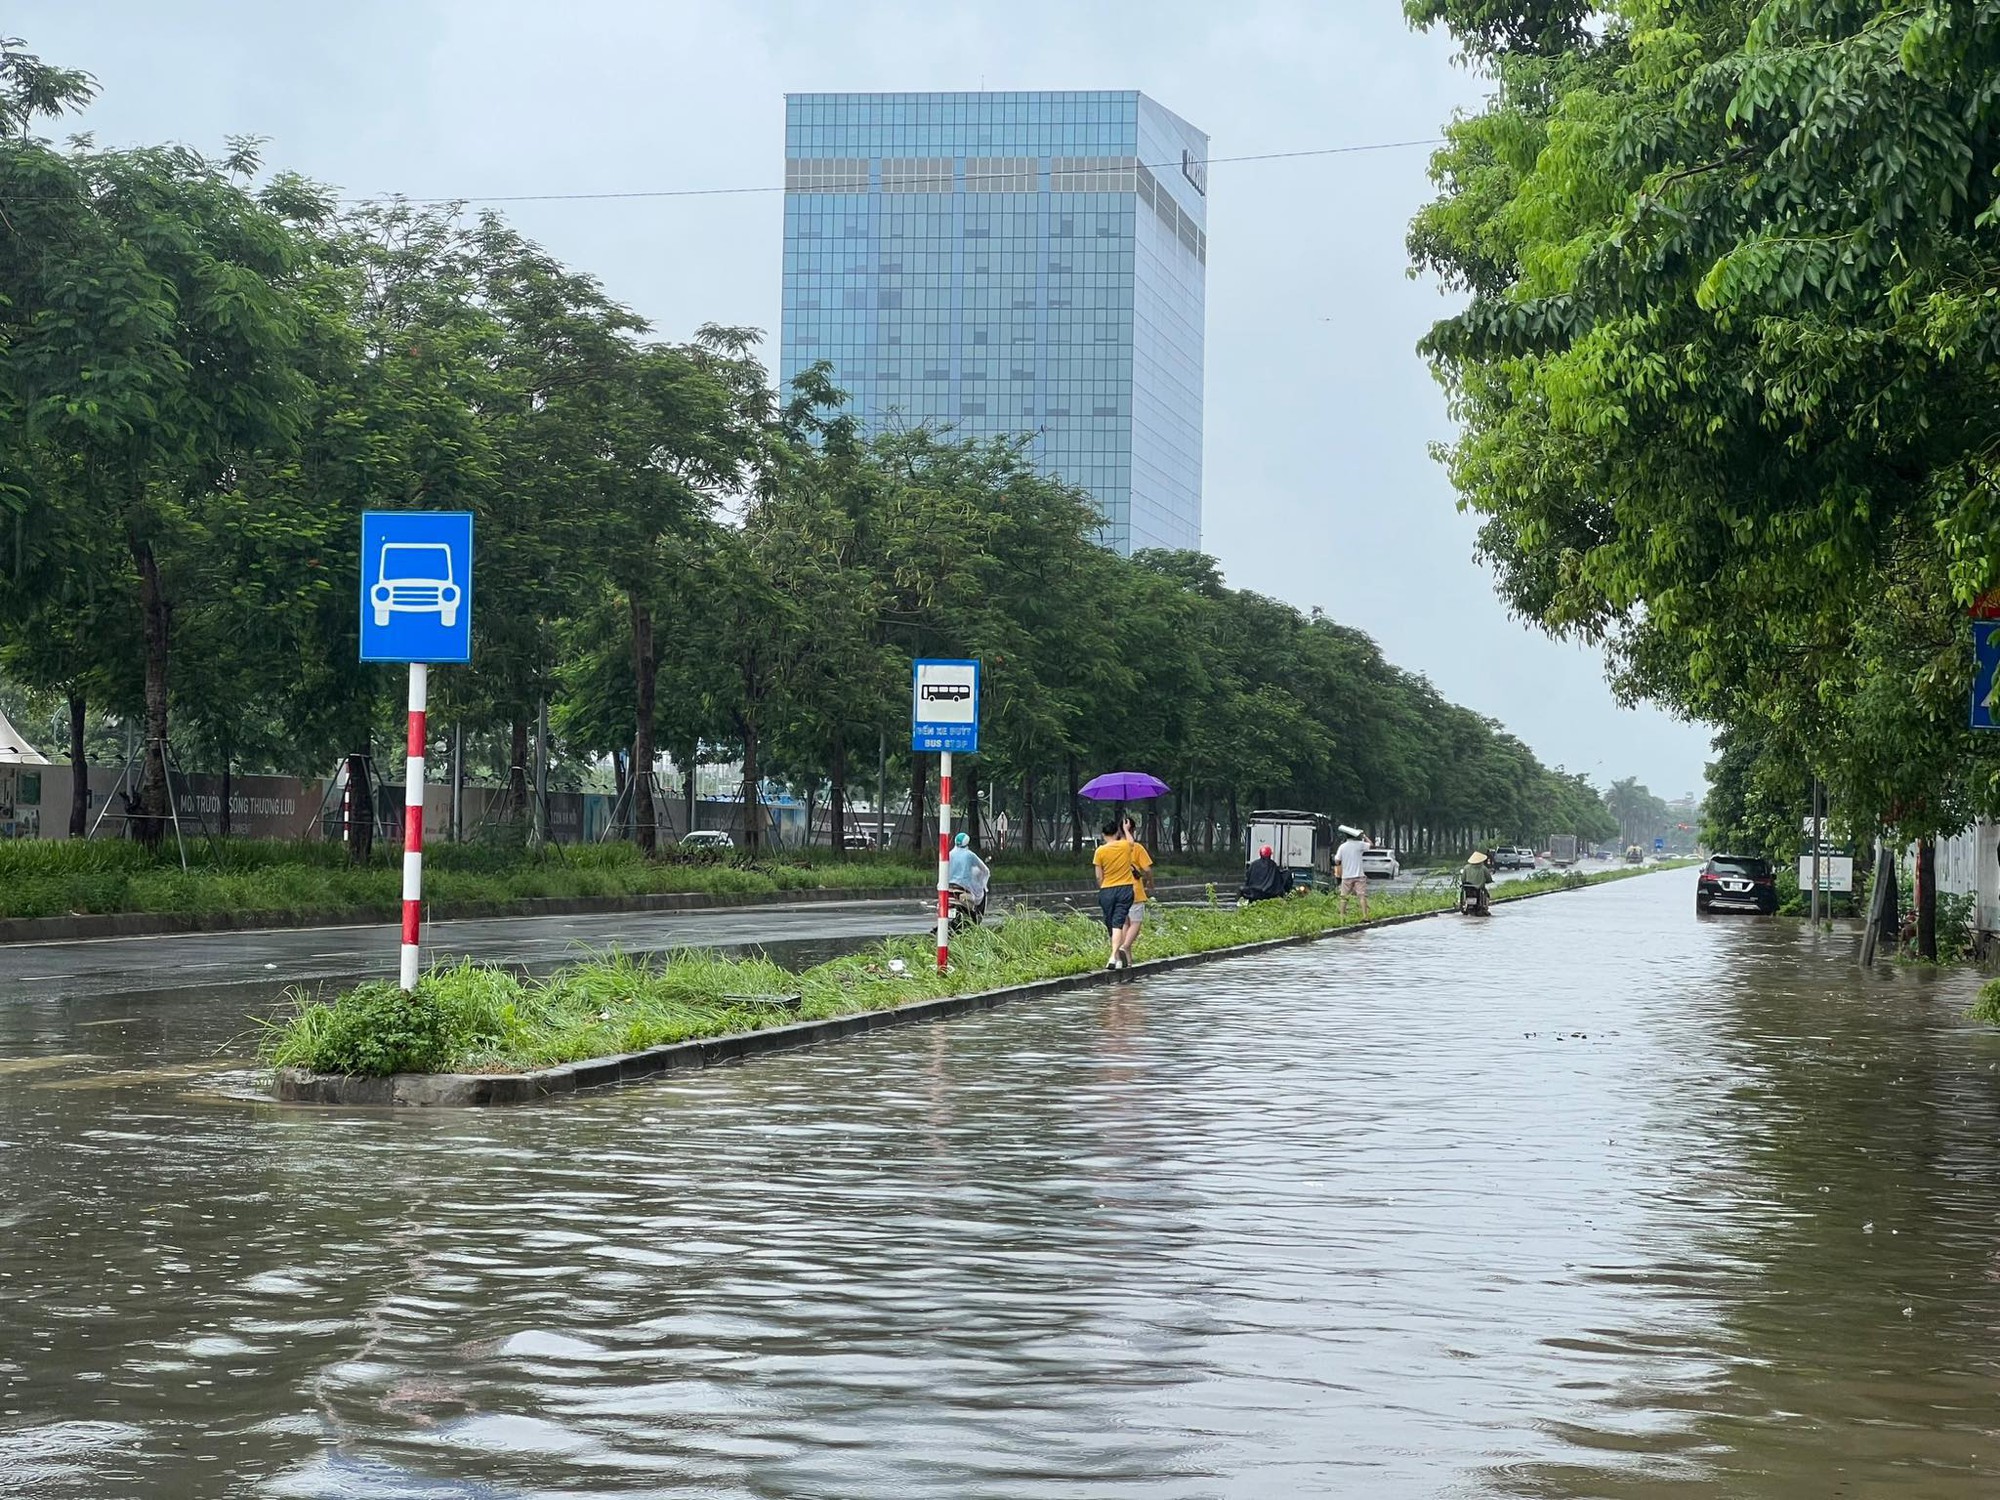 Hà Nội 'chìm trong biển nước' sau cơn mưa lớn - Ảnh 2.